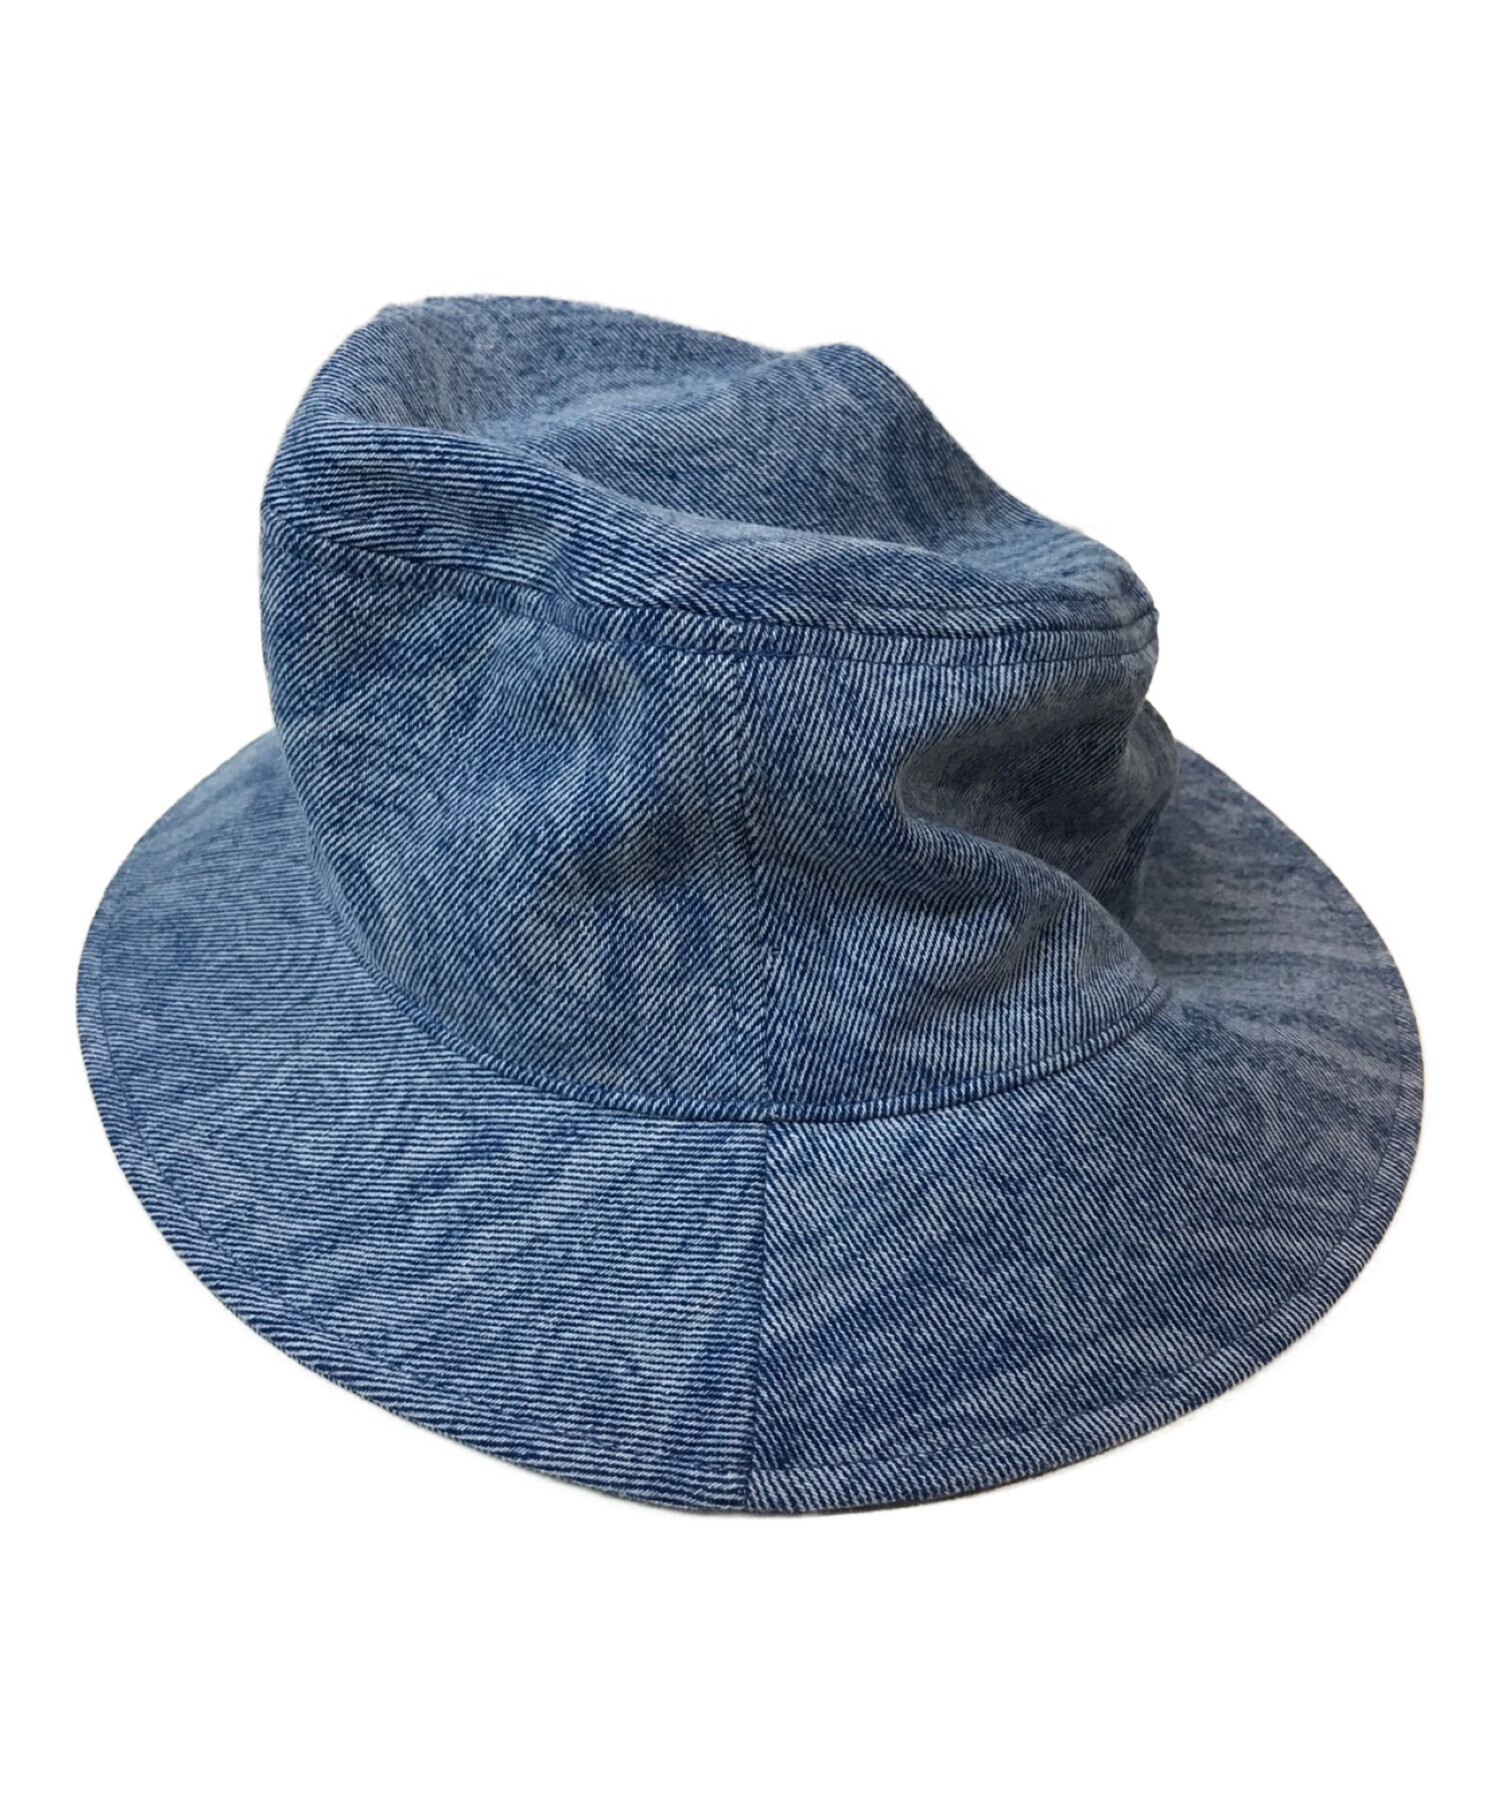 lamarqueETRO エトロ デニム ハット 帽子 ペイズリー ブルー サイズL/XL 美品